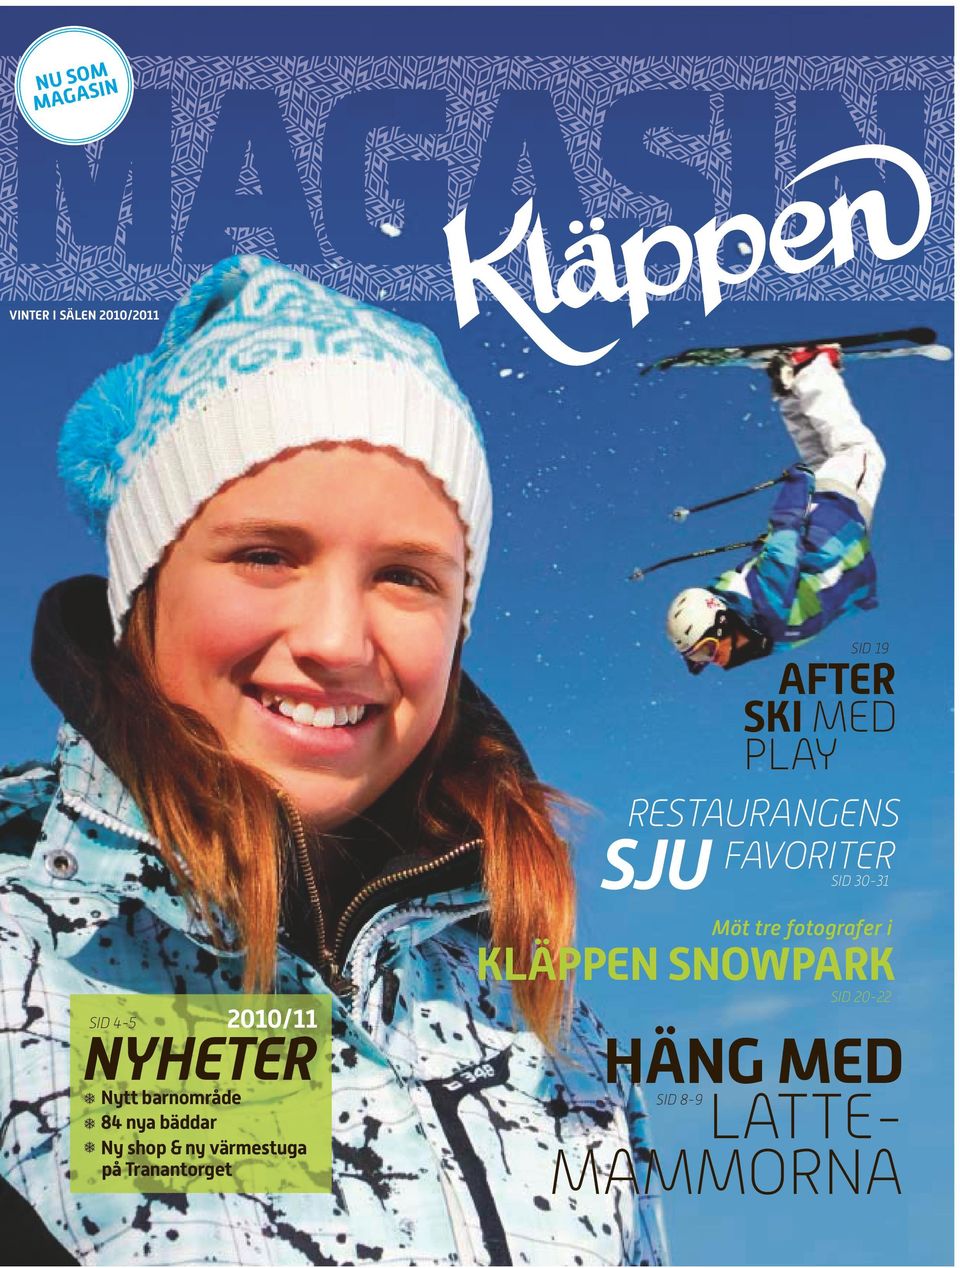 snowpark SID 45 2010/11 nyheter Nytt barnområde 84 nya bäddar Ny